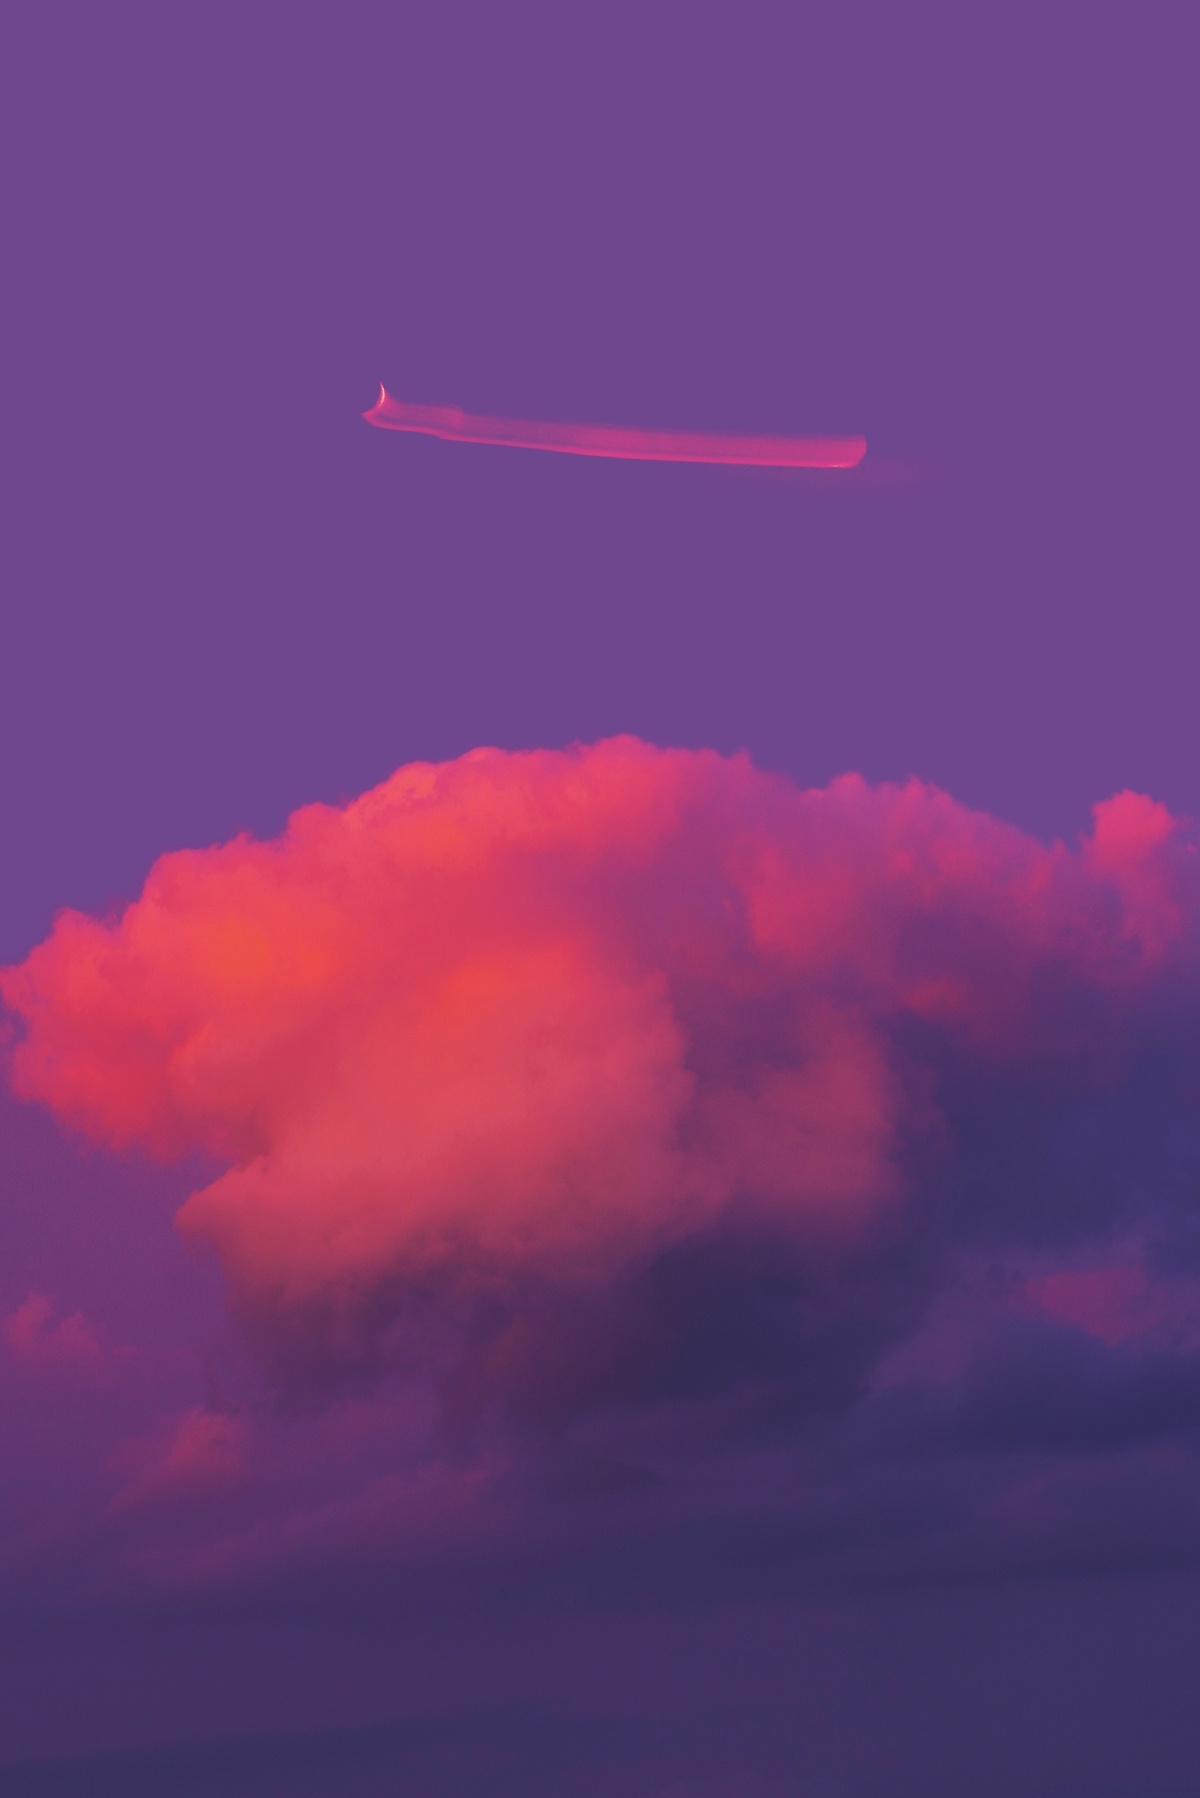 一架红色飞机在紫色的天空中飞行